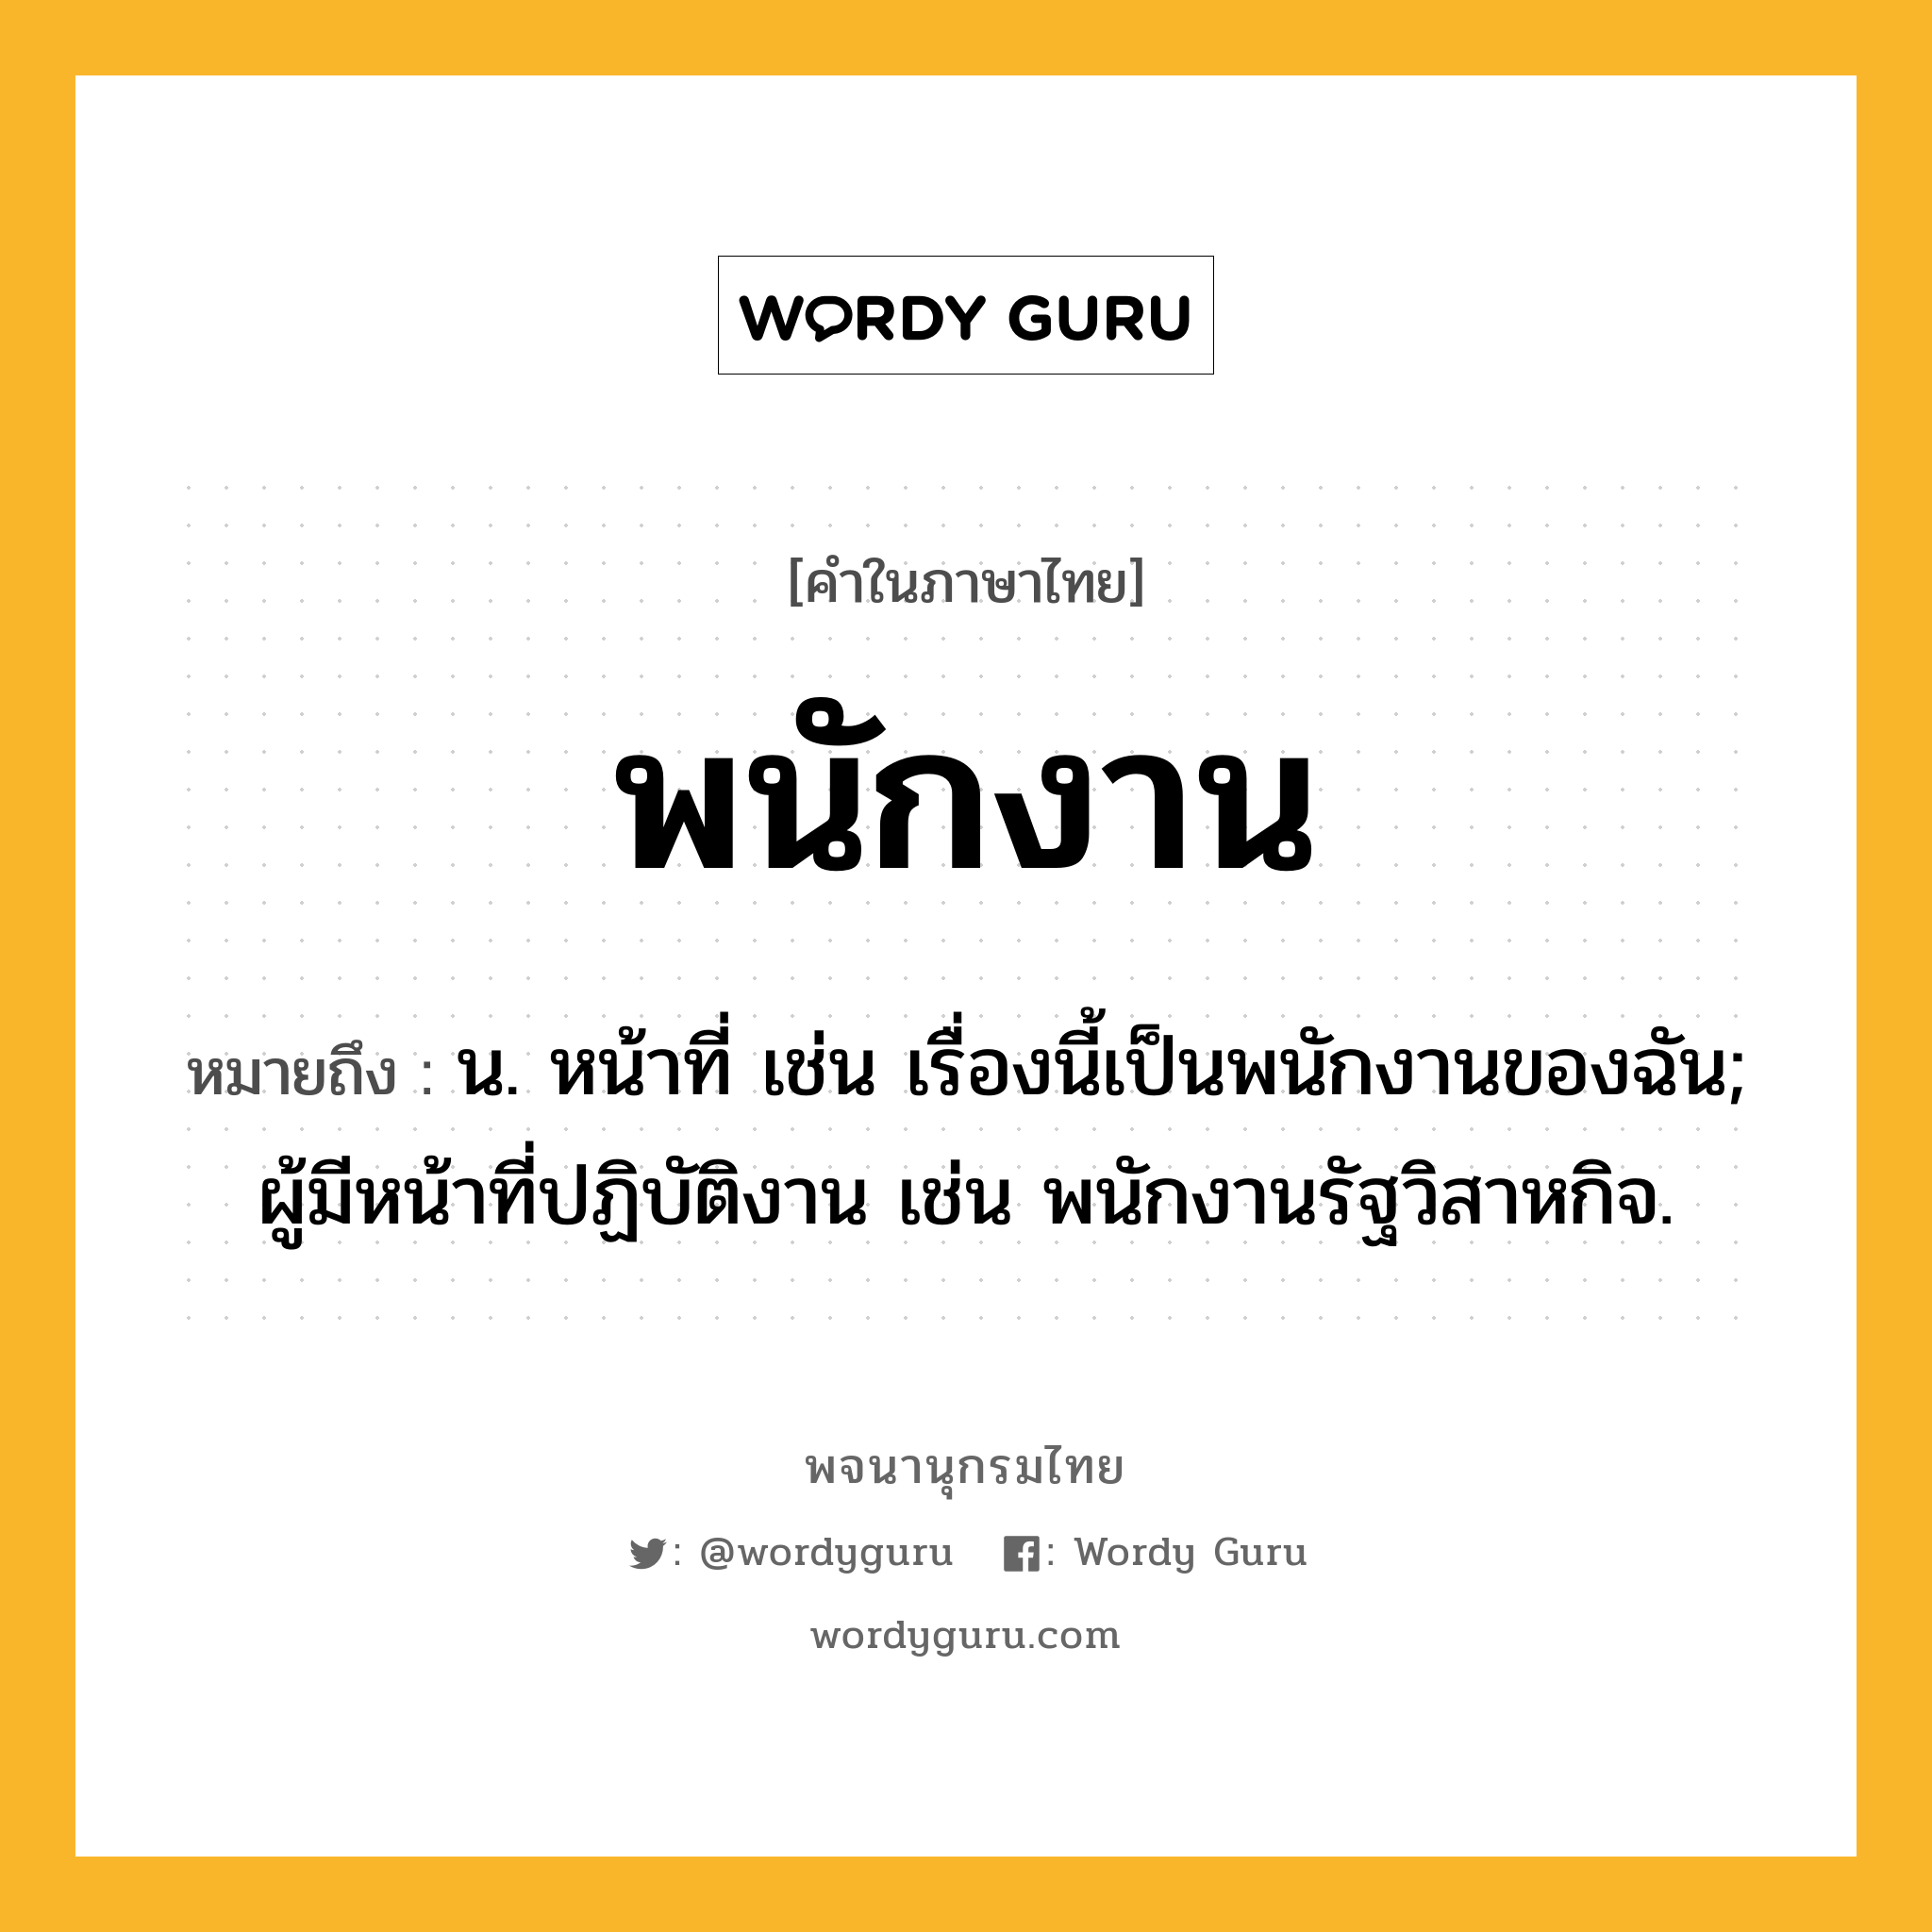 พนักงาน ความหมาย หมายถึงอะไร?, คำในภาษาไทย พนักงาน หมายถึง น. หน้าที่ เช่น เรื่องนี้เป็นพนักงานของฉัน; ผู้มีหน้าที่ปฏิบัติงาน เช่น พนักงานรัฐวิสาหกิจ.